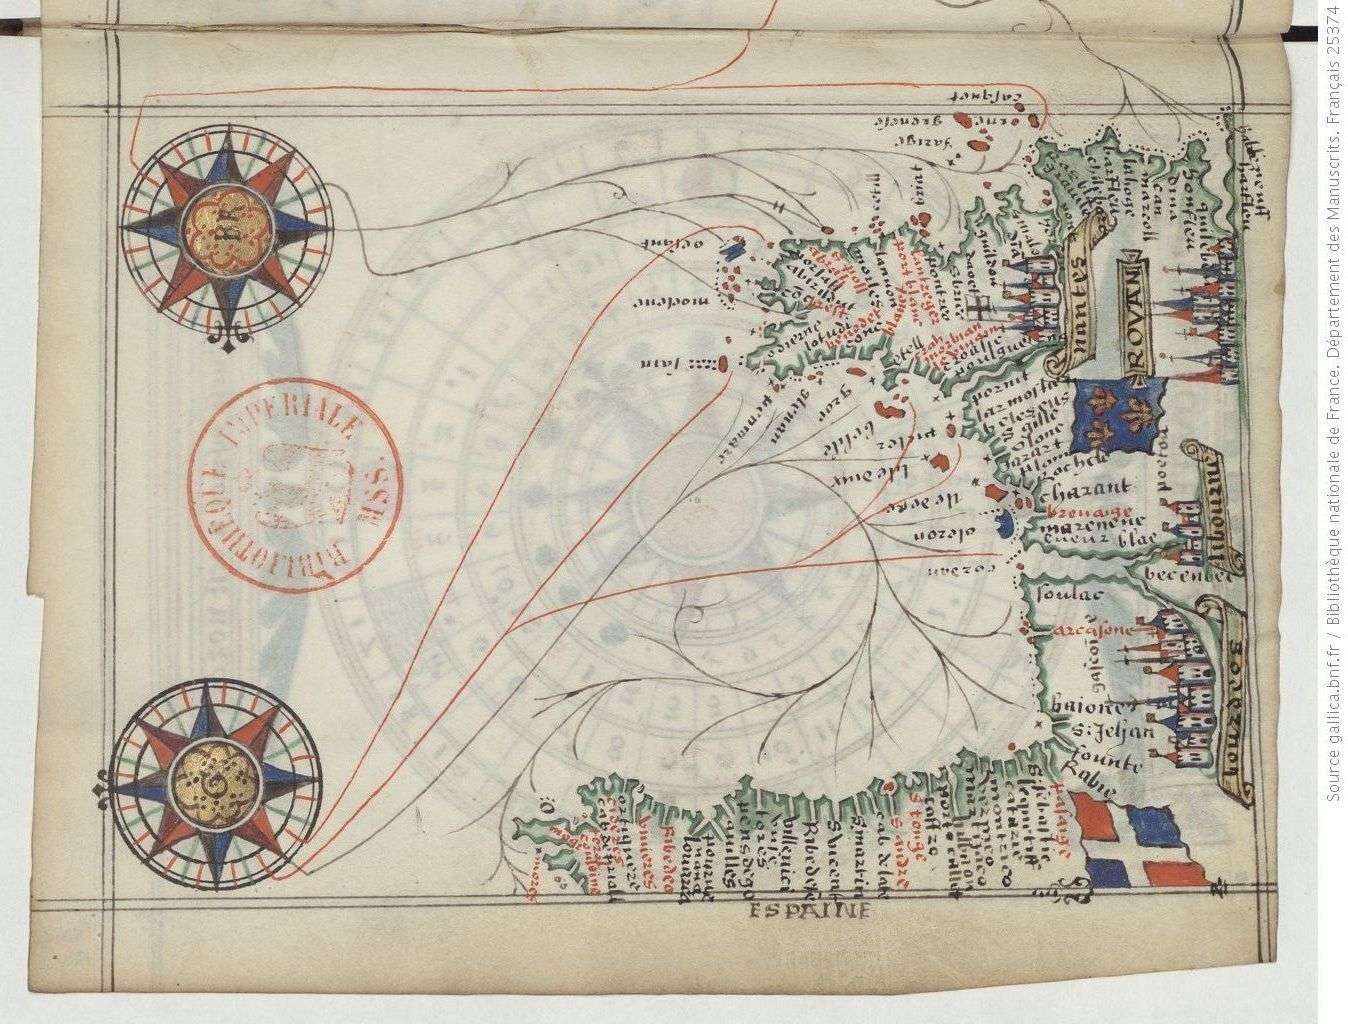 Il s'agit d'une carte du XVIe siècle (portulan) représentant les étapes de navigation (cabotage) tout au long du littoral atlantique